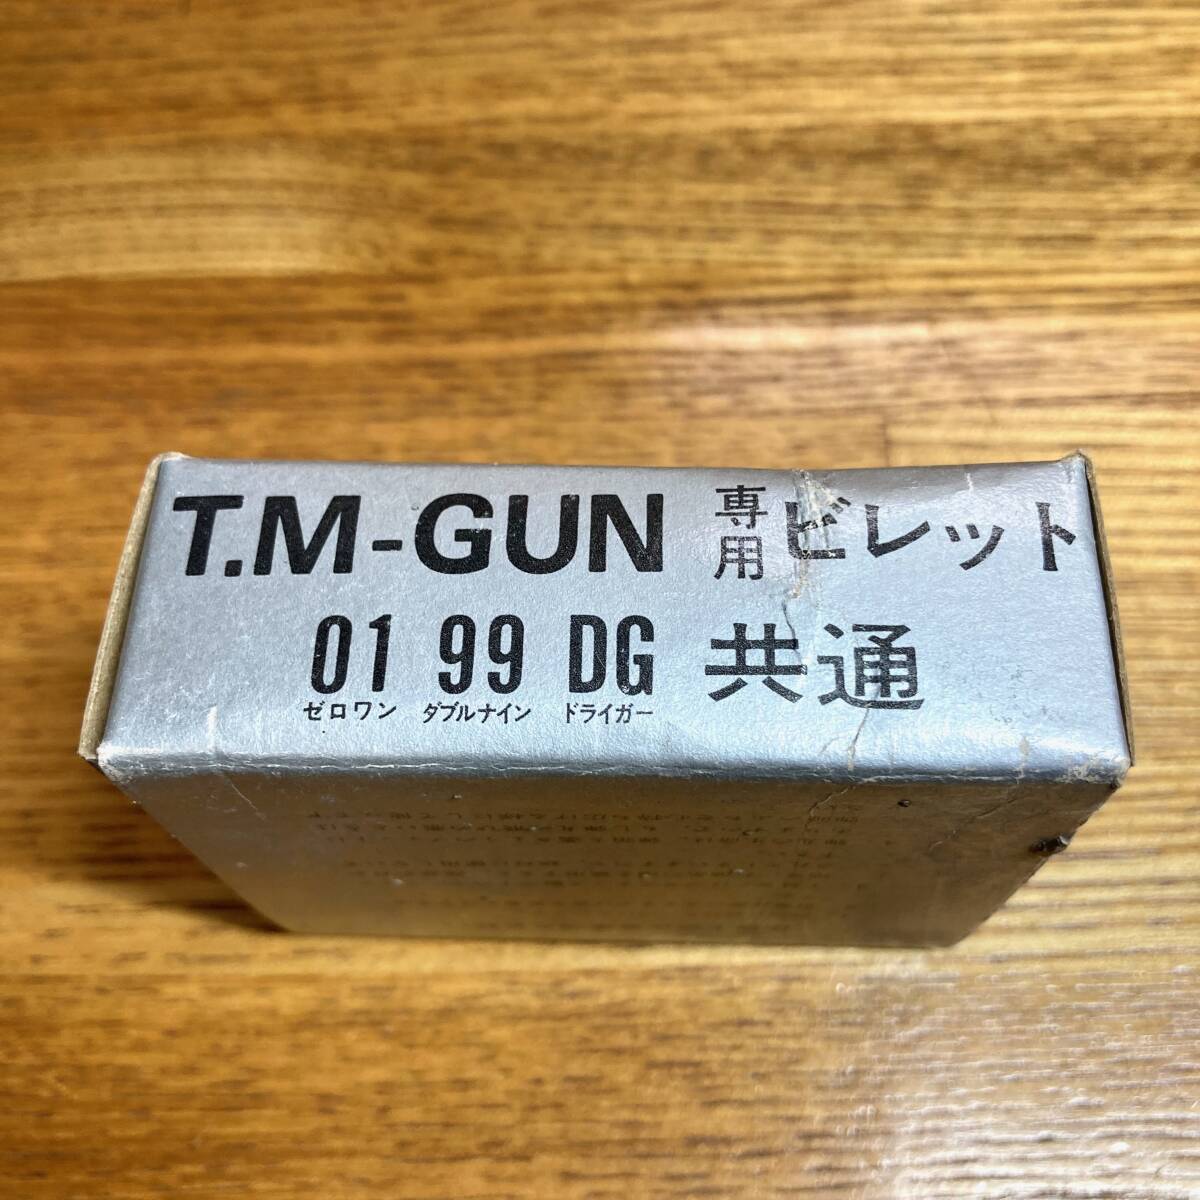 レア 当時物 新品 即決 送料無料 T.M-GUN 専用 ビレット 01 99 DG ドライガー 共通 薬莢 弾丸 薬きょう マツシロ タカトク TMガン テムガンの画像5